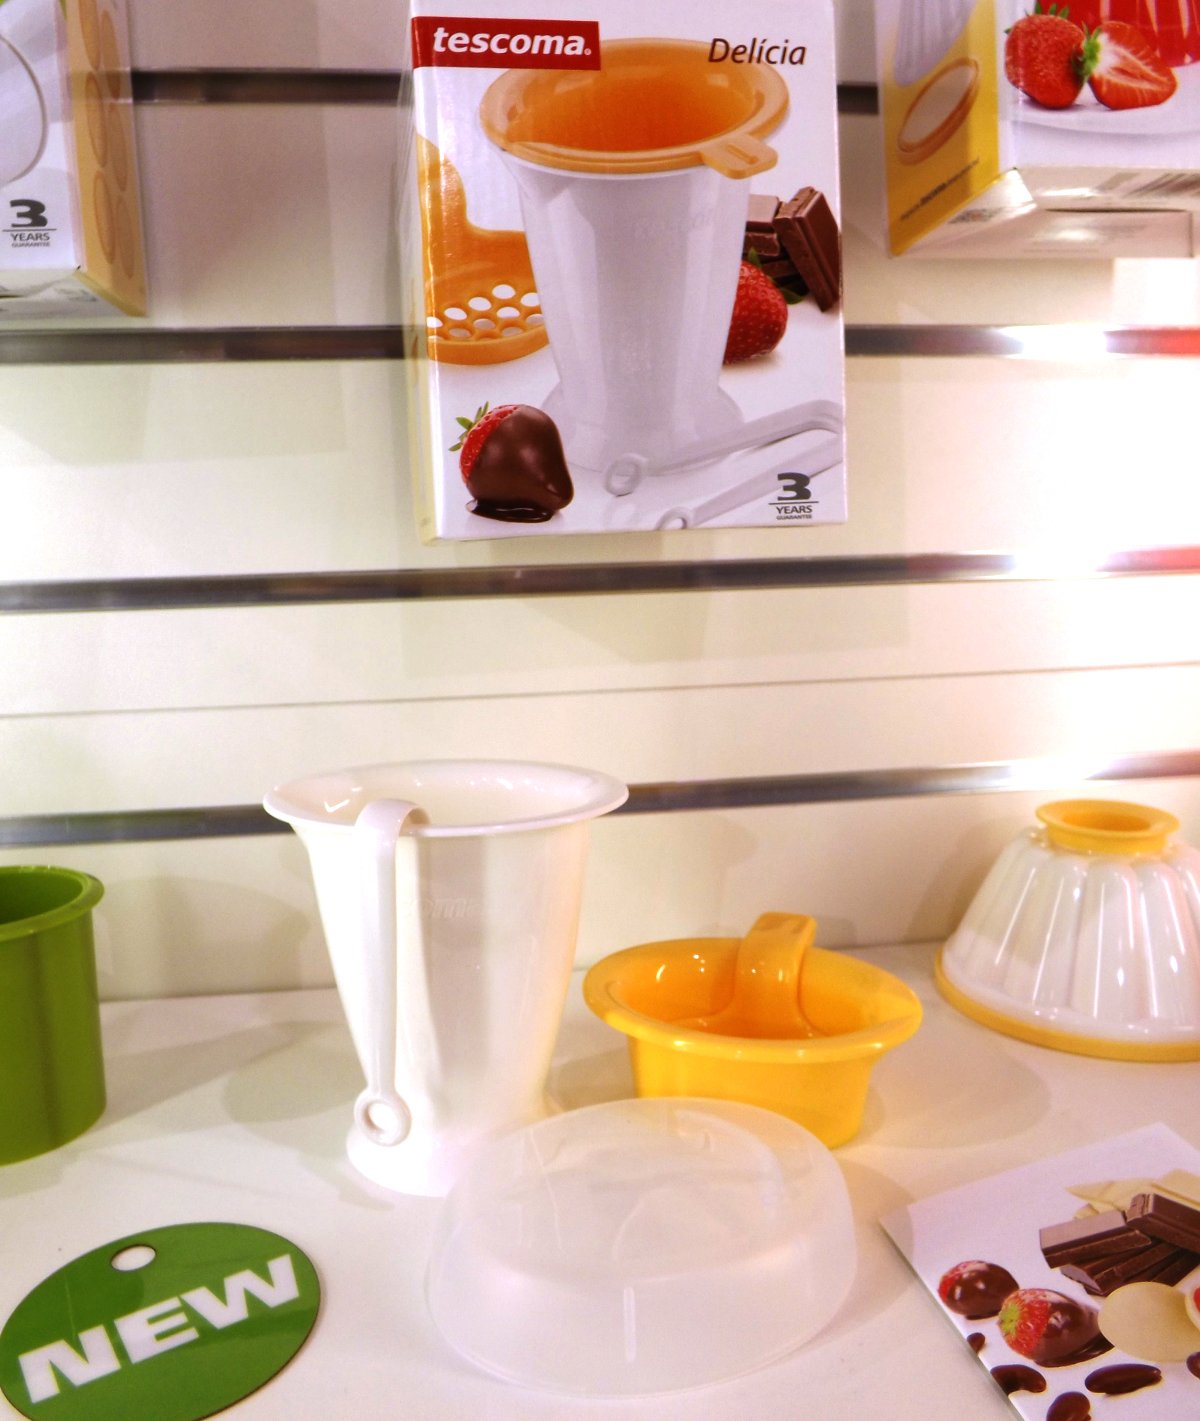 Набор из коллекции Tescoma DELICIA для приготовления ягод в шоколаде на весенней выставке HouseHoldExpo 2015